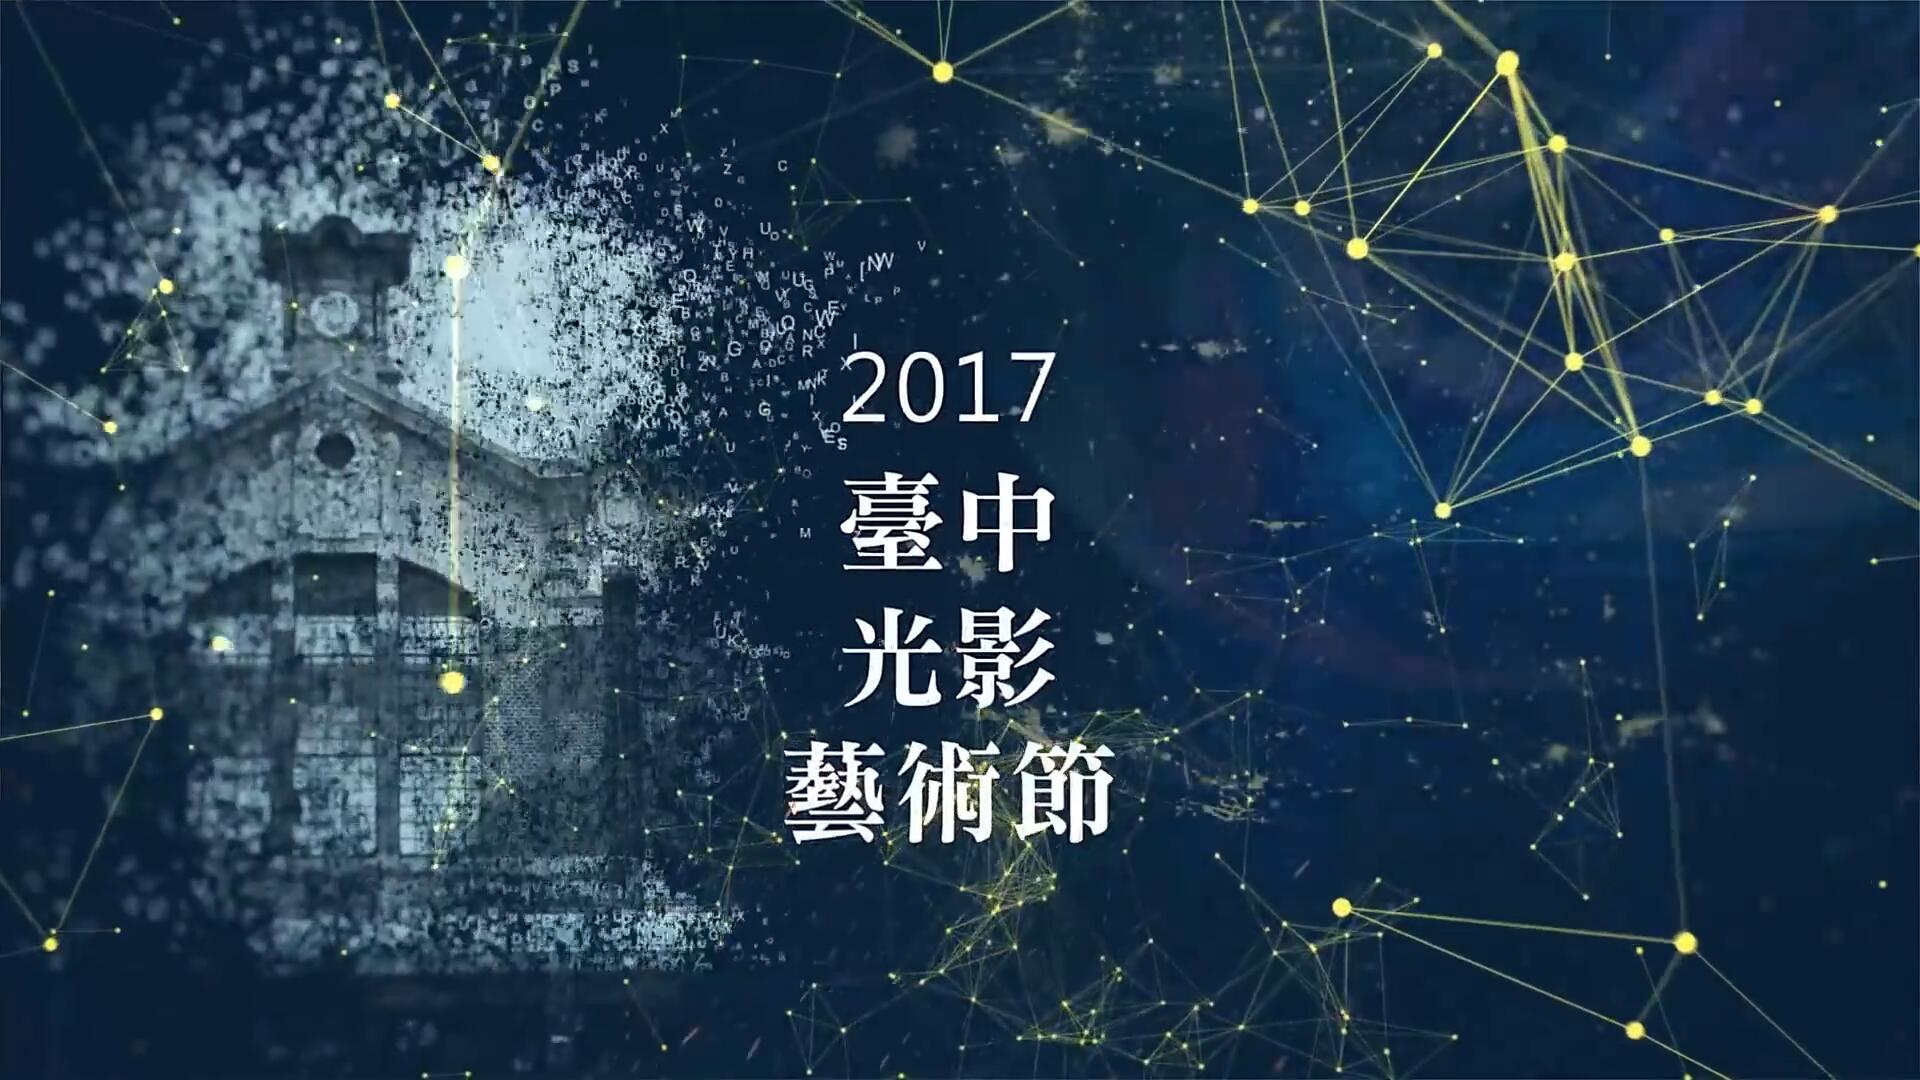 【台湾】台中光影艺术节宣传片